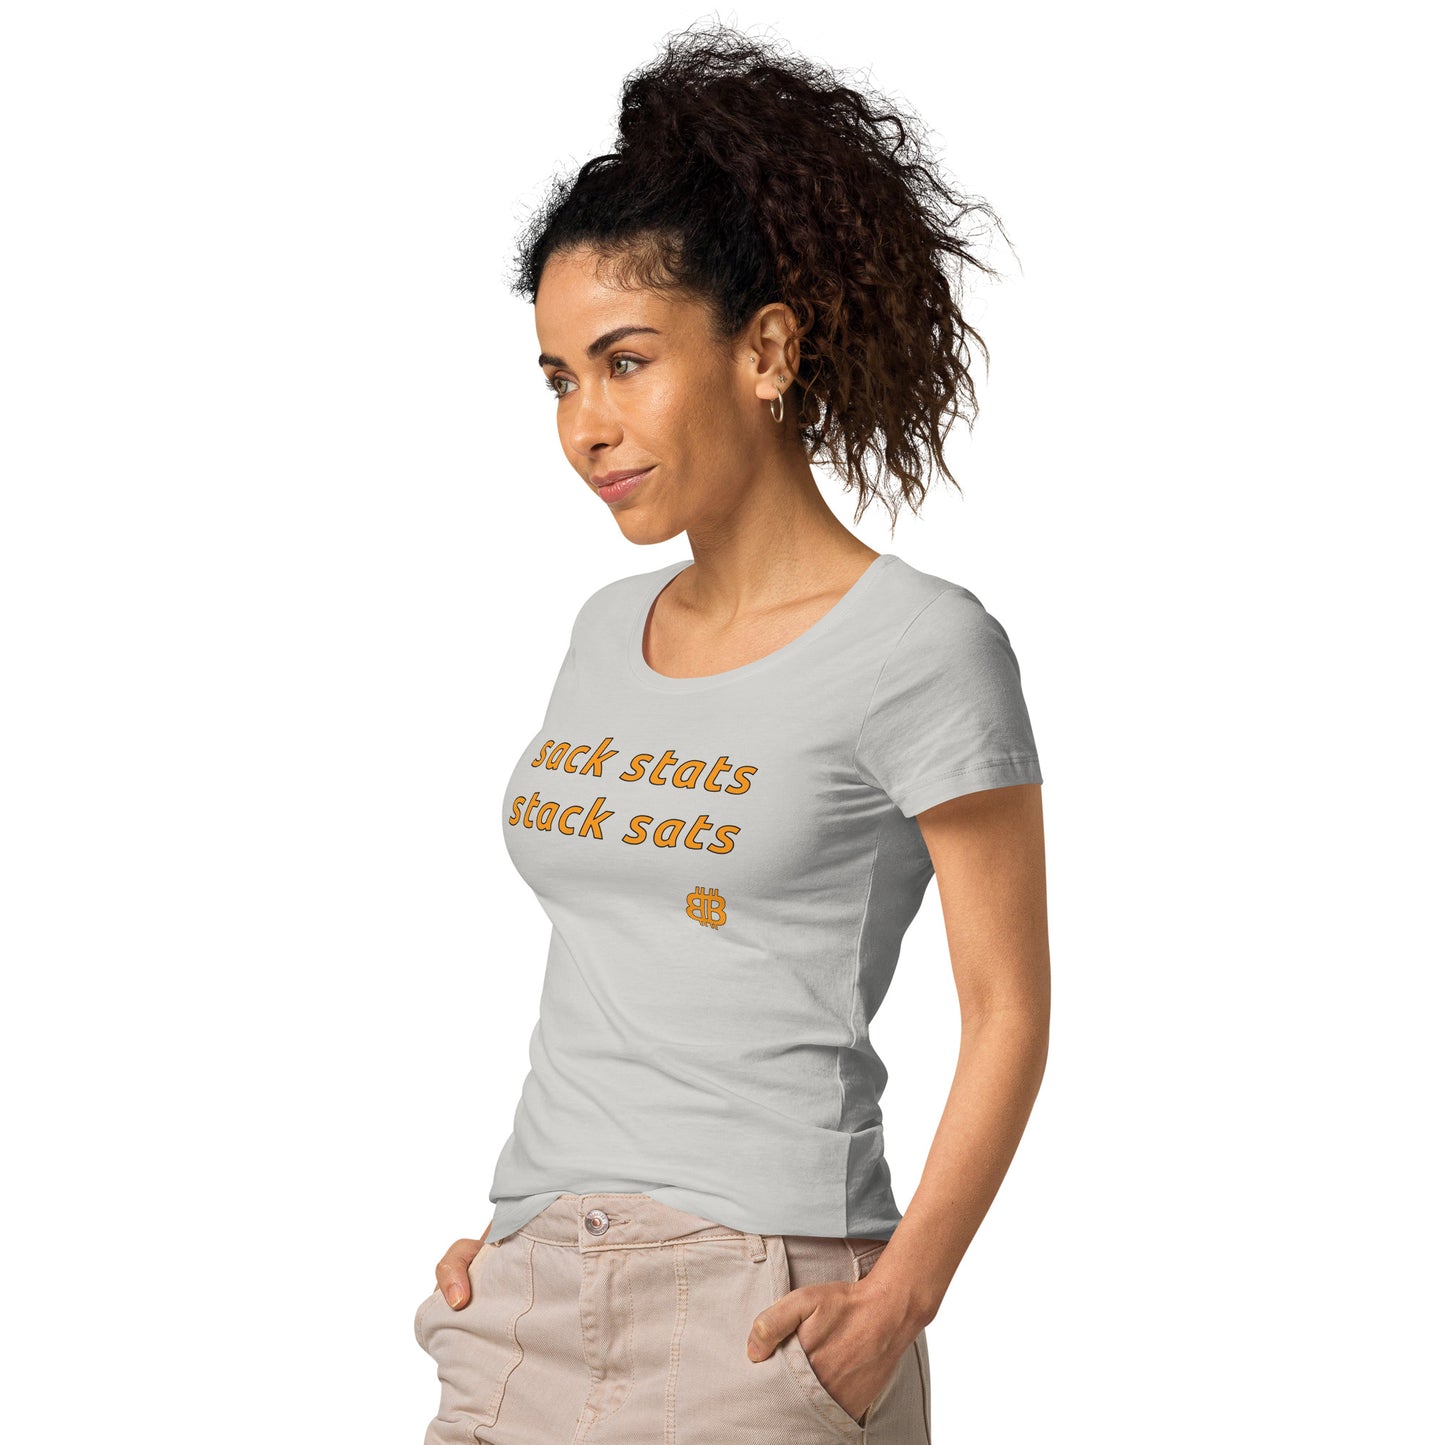 Women’s wide neck short sleeve t-shirt "SackStats"